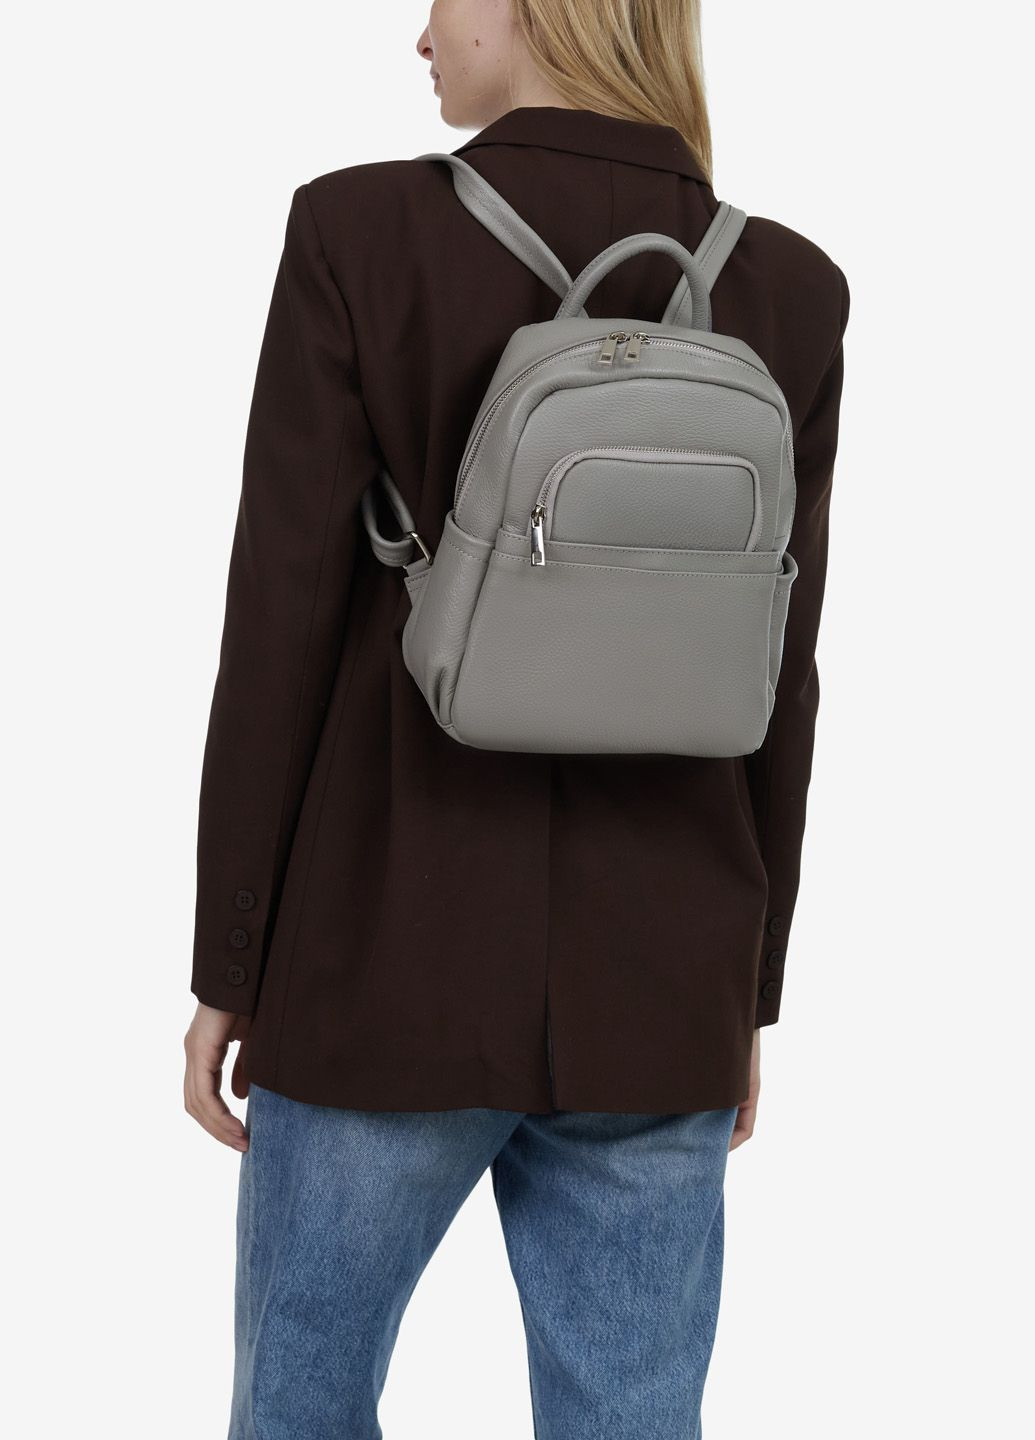 Рюкзак женский кожаный Backpack Regina Notte (293056004)